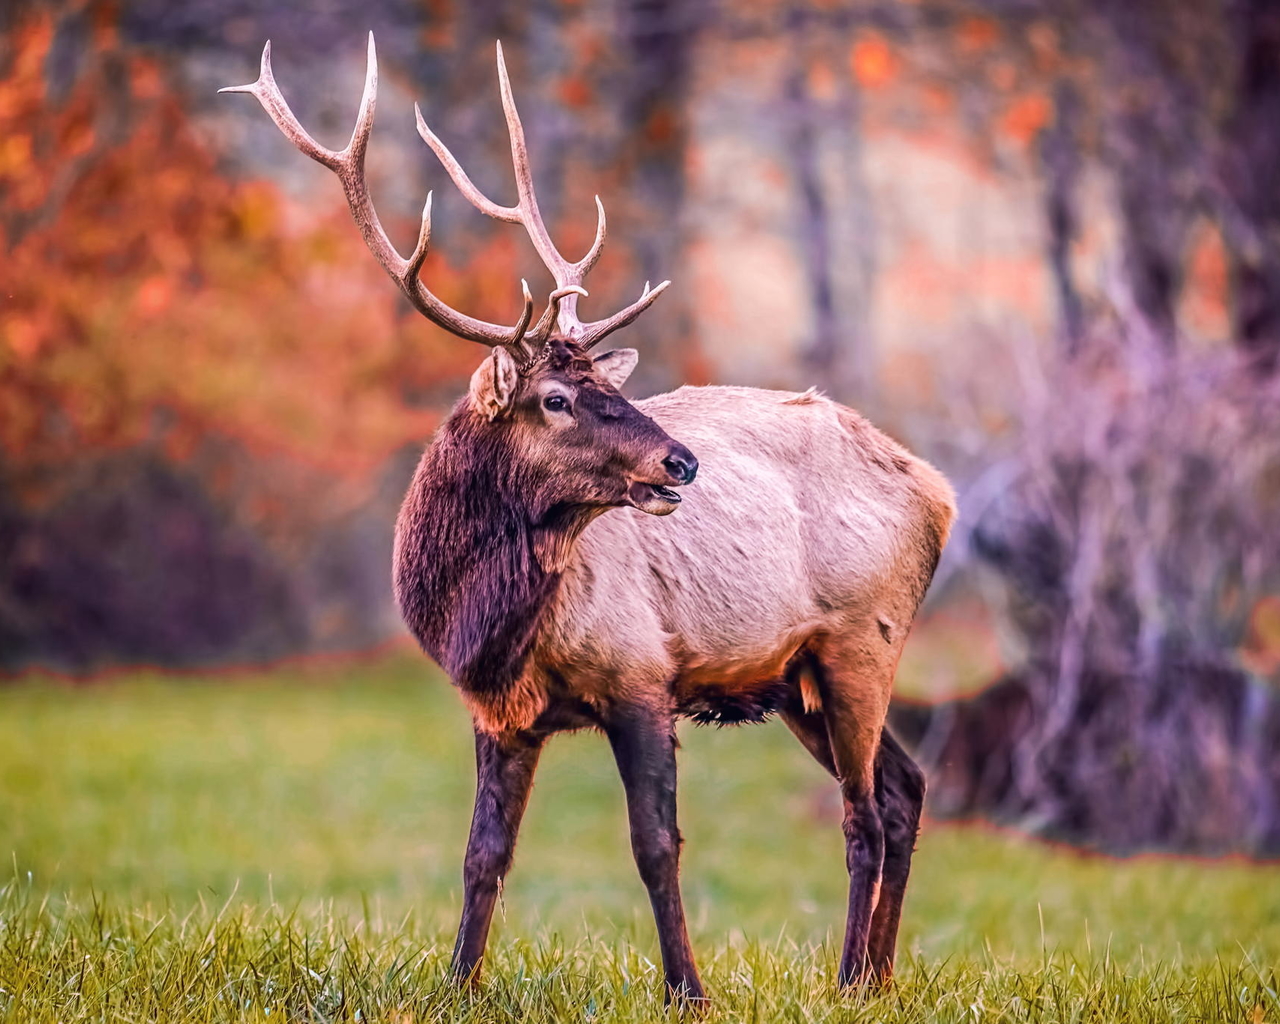 麋鹿呦呦 麋鹿高像素真实图片